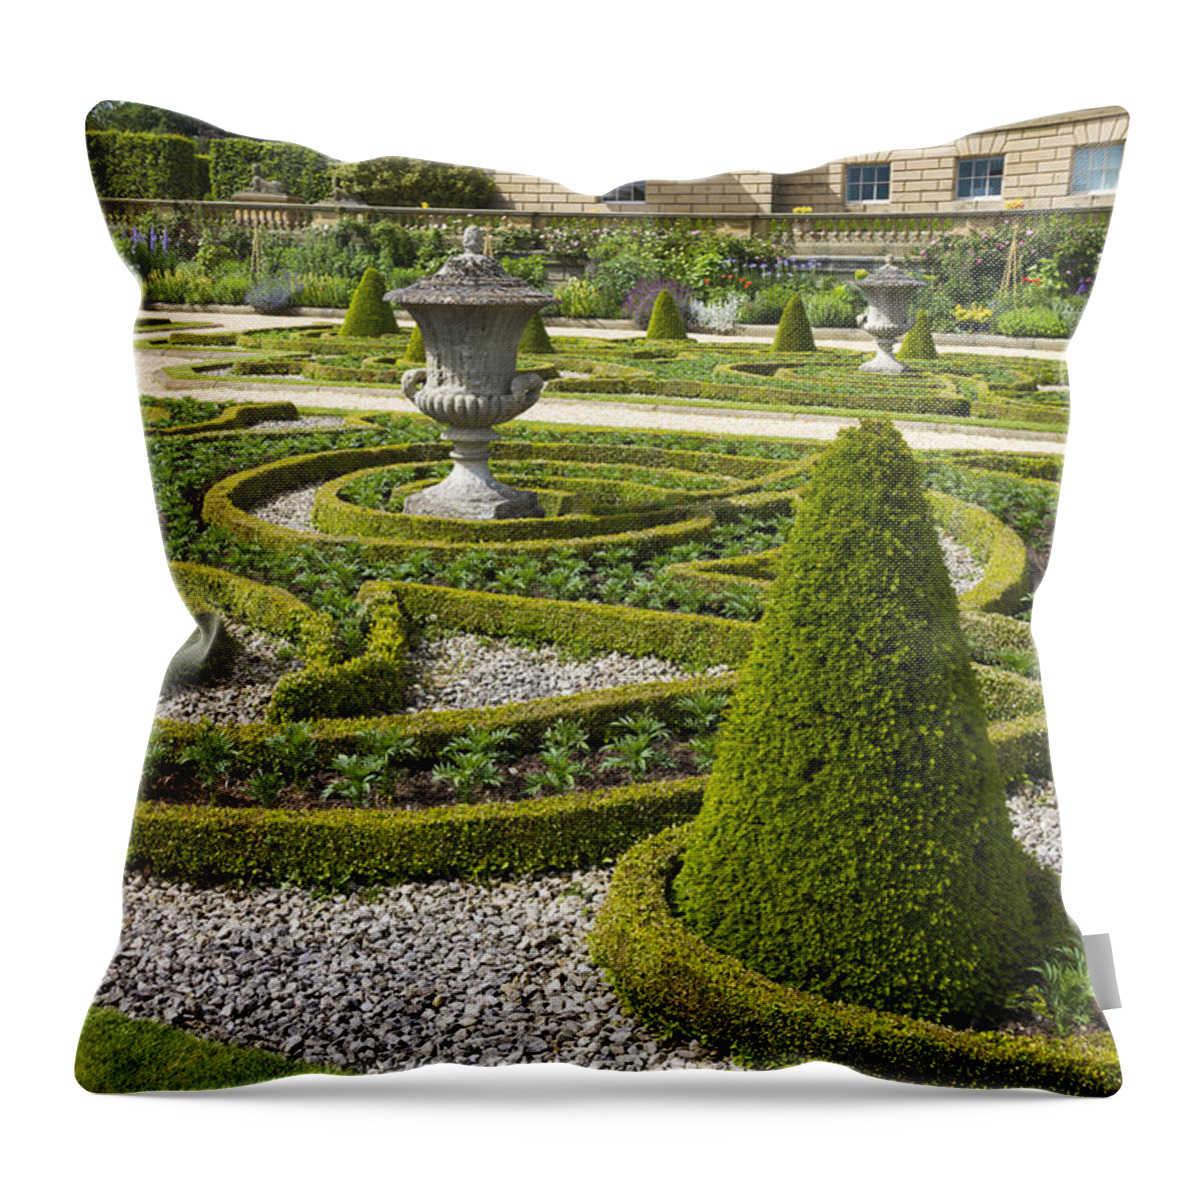 Garden Throw Pillow featuring the photograph Formal gardens - 9 by Chris Smith